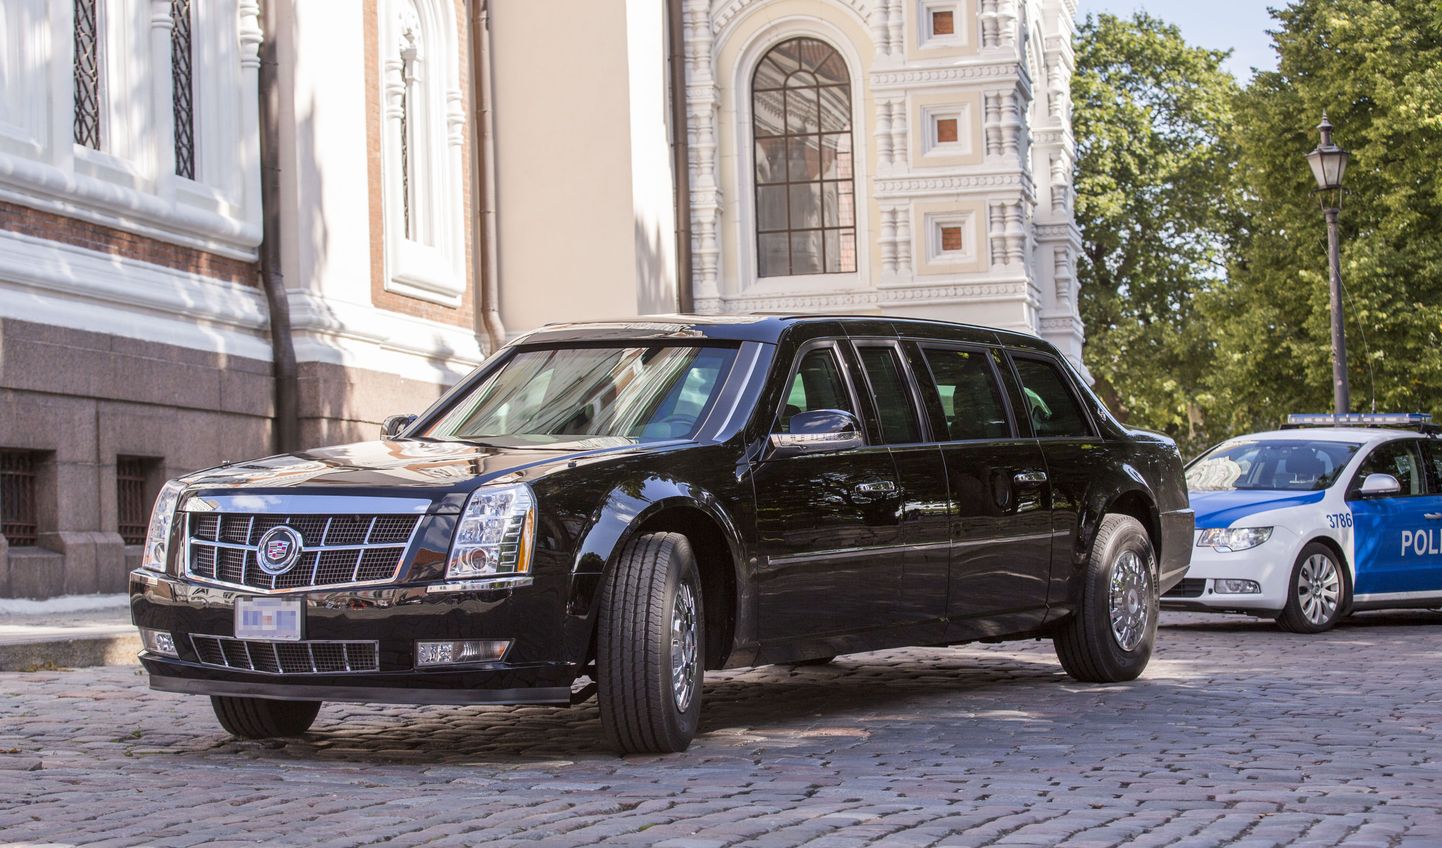 USA presidendi Barack Obama limusiin proovis nädalavahetusel Tallinna tänavatel sõitmist.